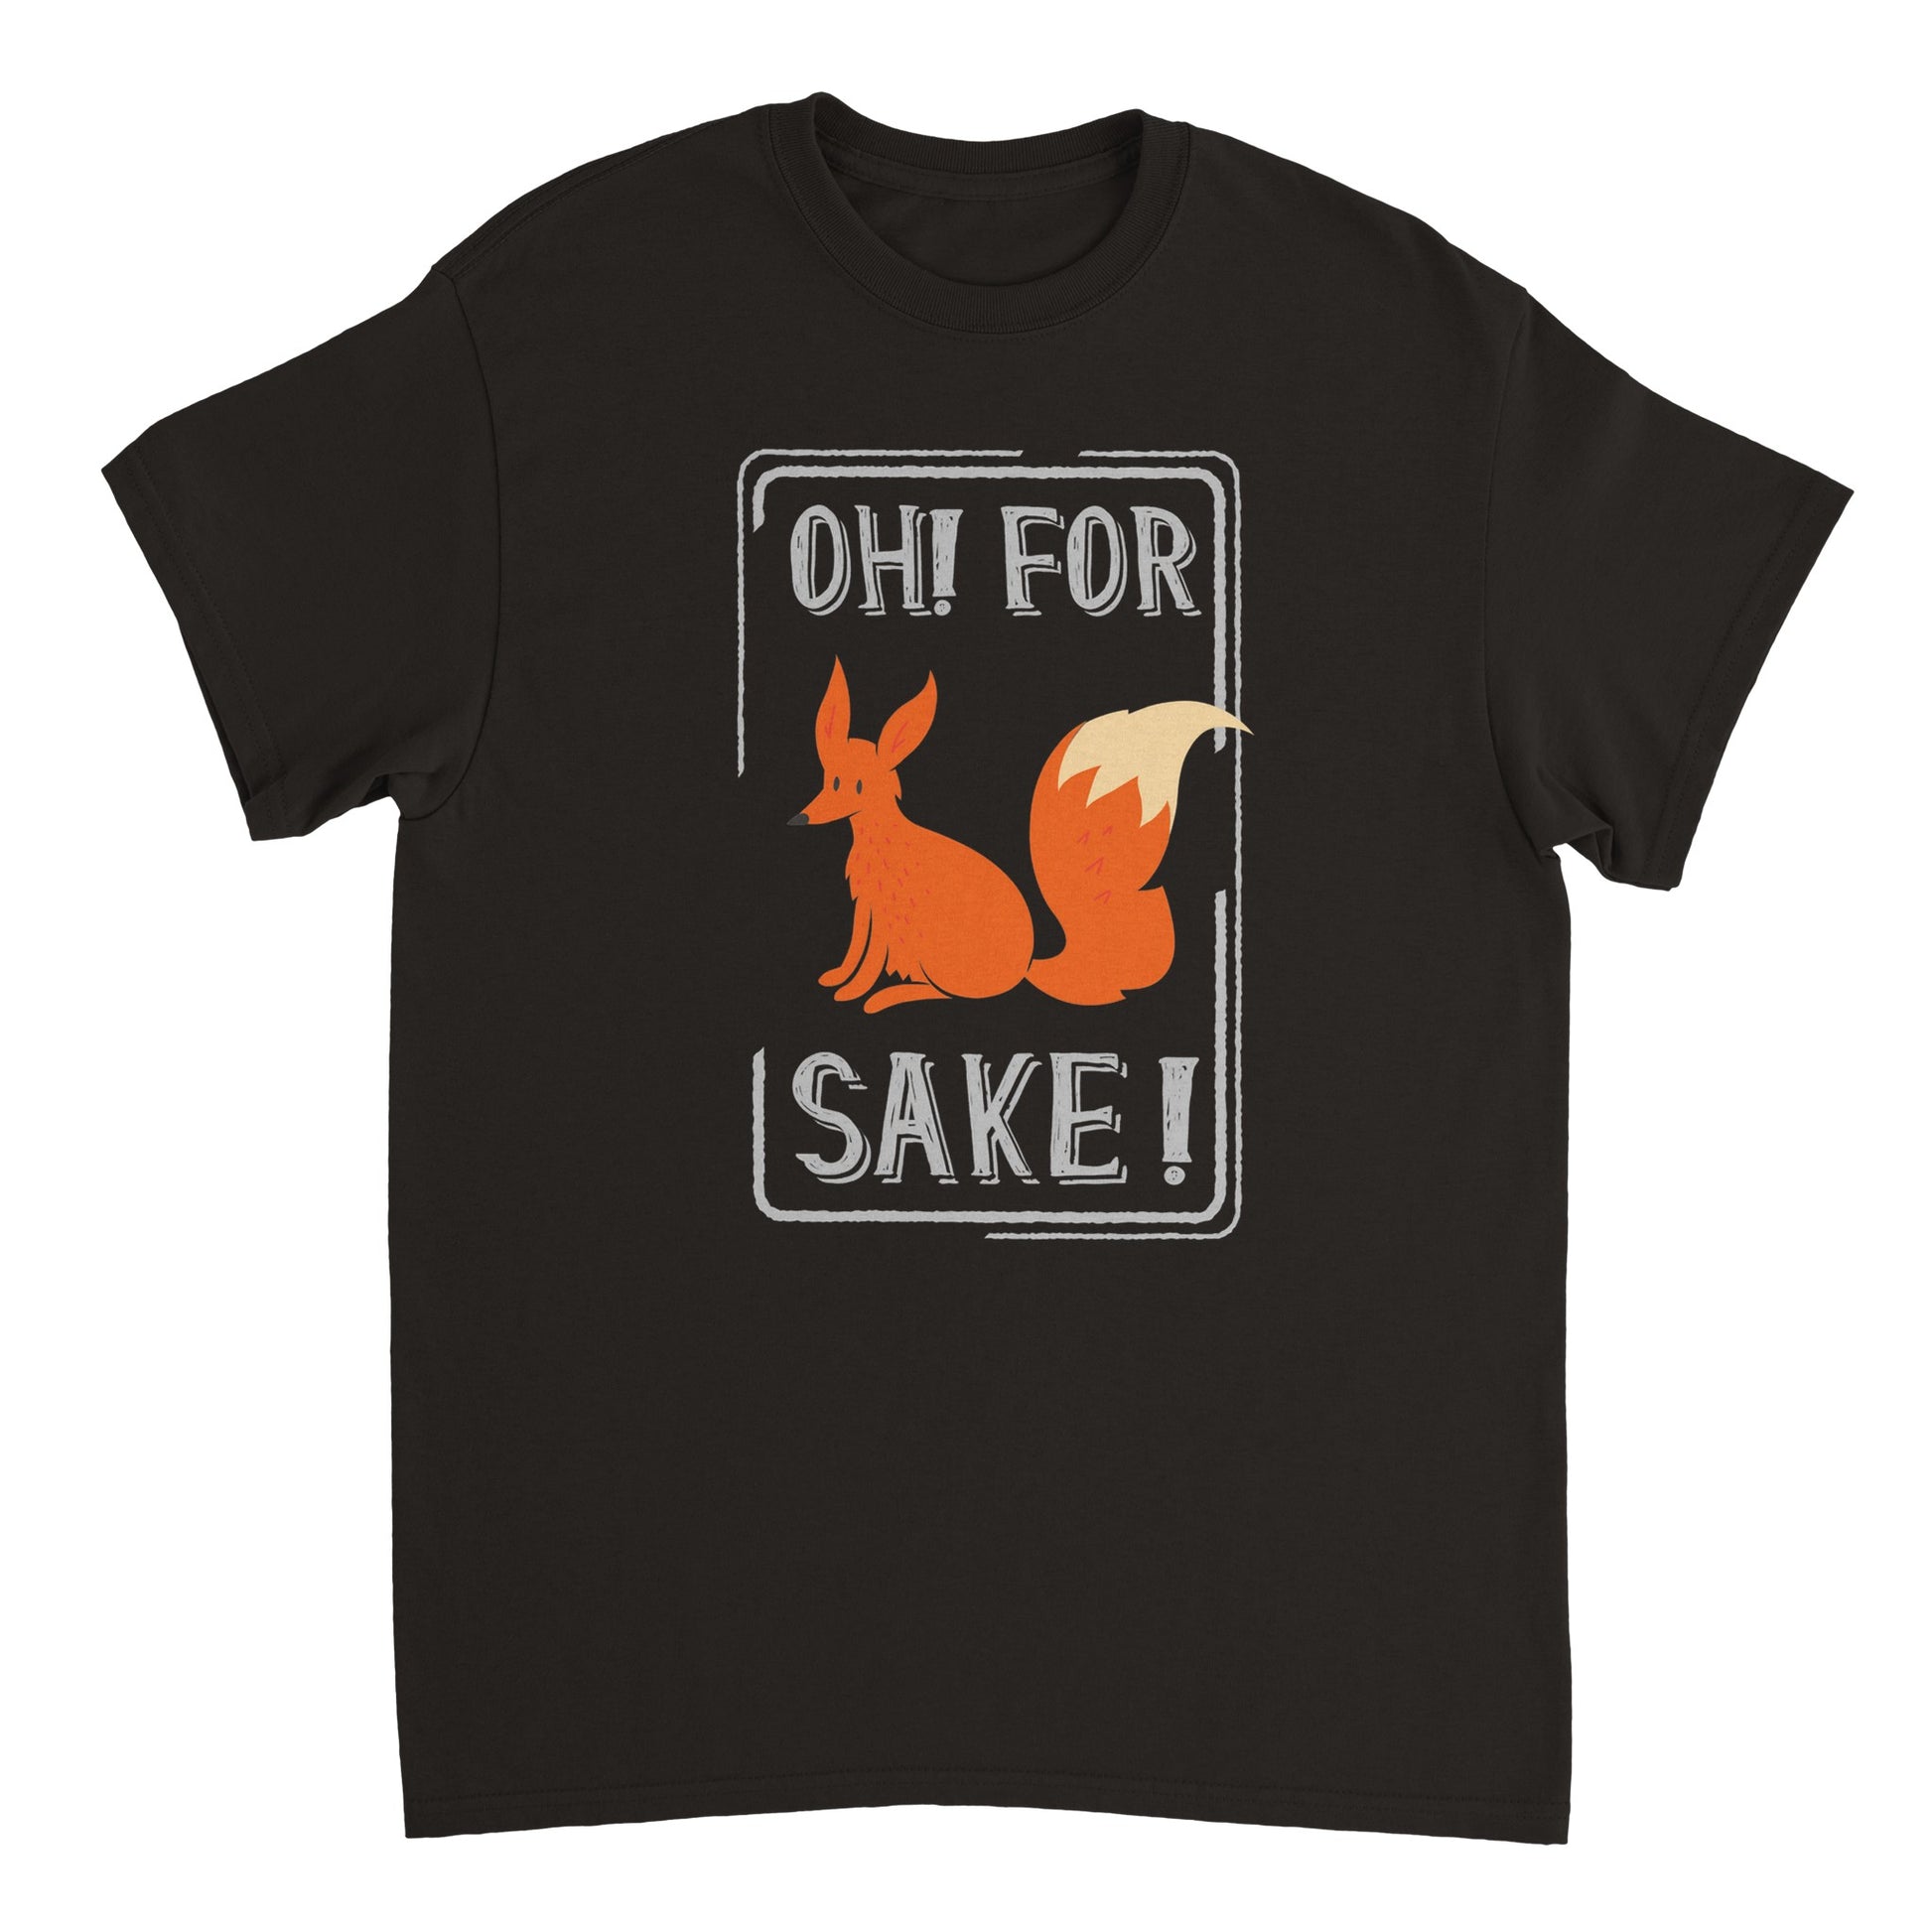 Oh! For Fox Sake! T-shirt - Mister Snarky's